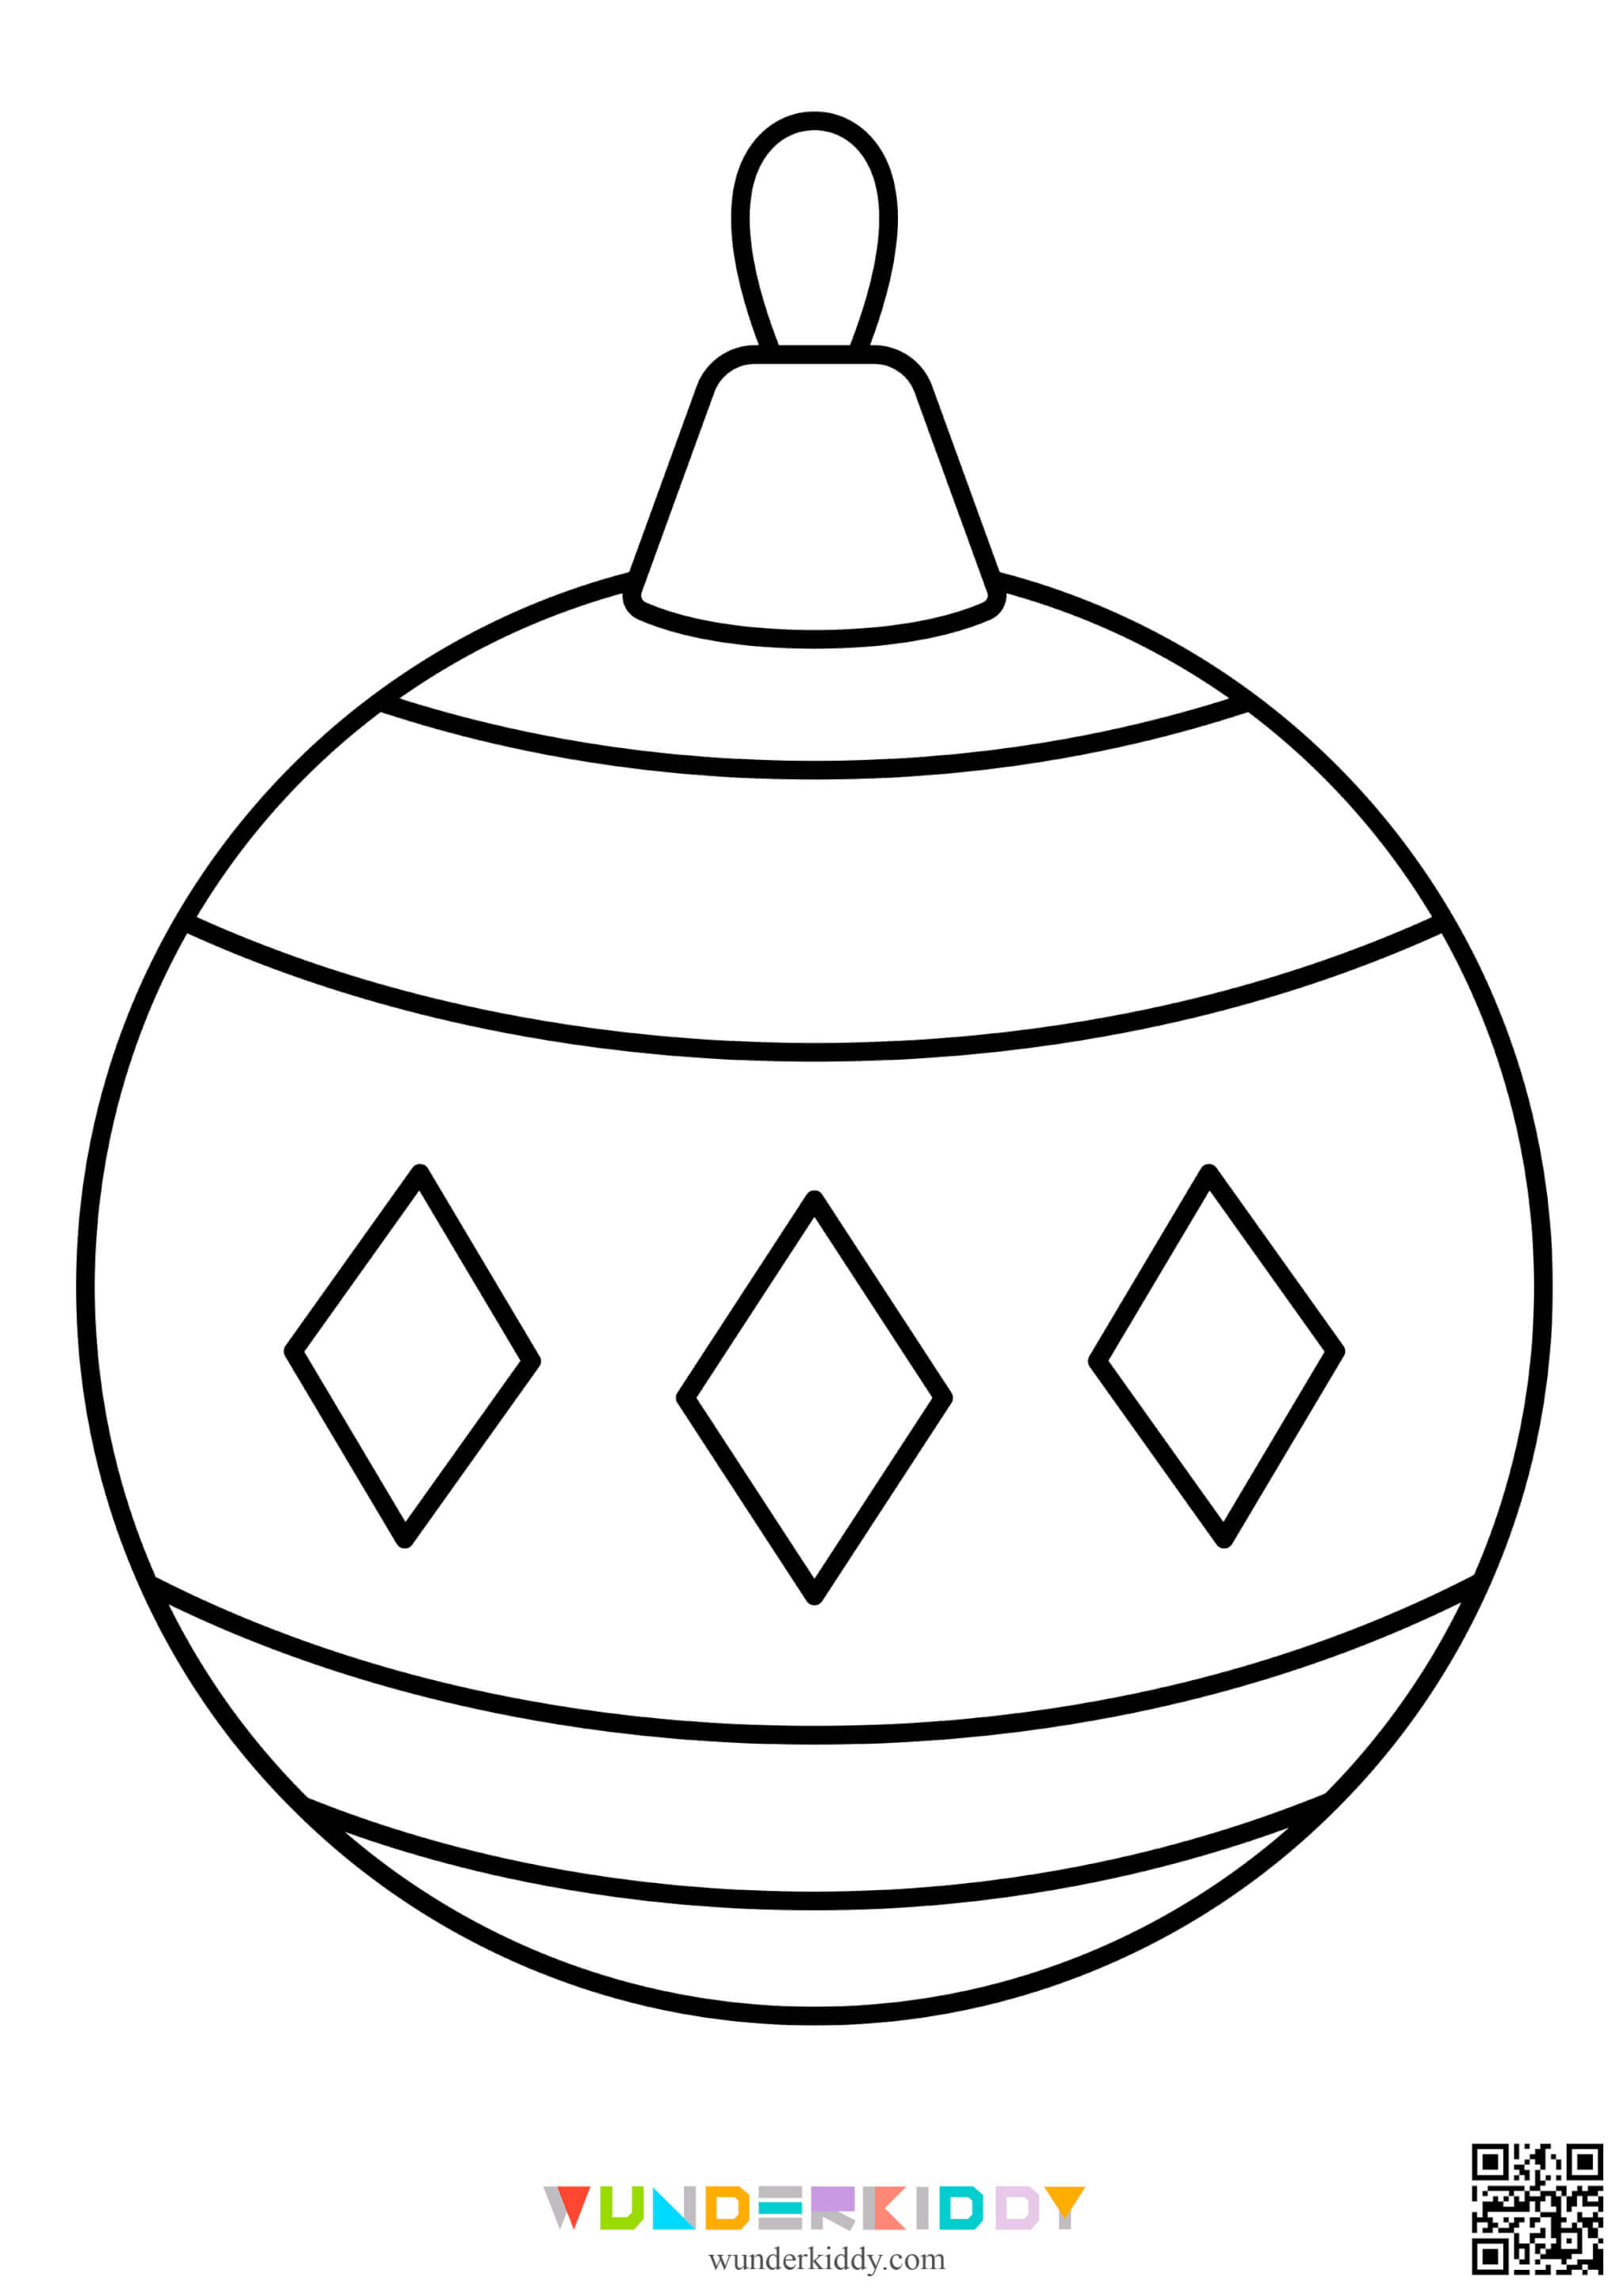 Раскраски ёлочных шаров для детей - Изображение 2